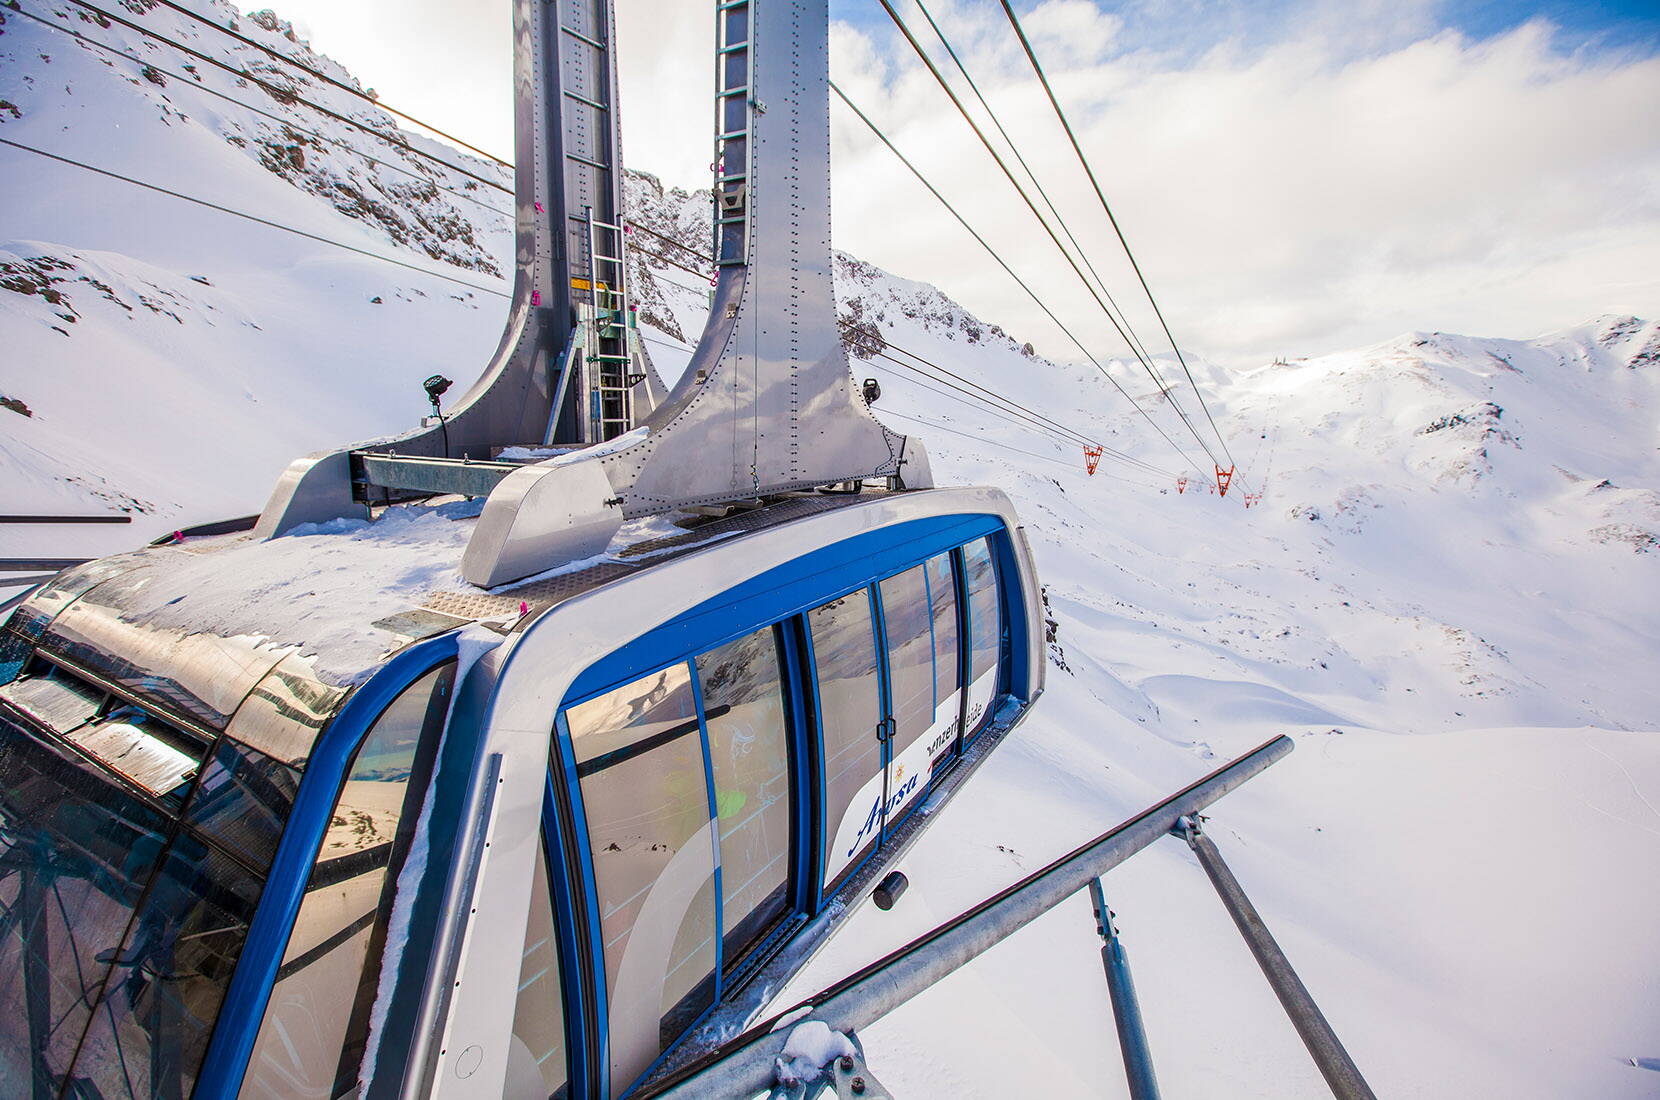 Escursione per famiglie Arosa Lenzerheide. Il comprensorio di sport sulla neve di Arosa Lenzerheide attende con ansia la vostra visita in montagna e vi farà battere il cuore nel nostro paradiso degli sport sulla neve.